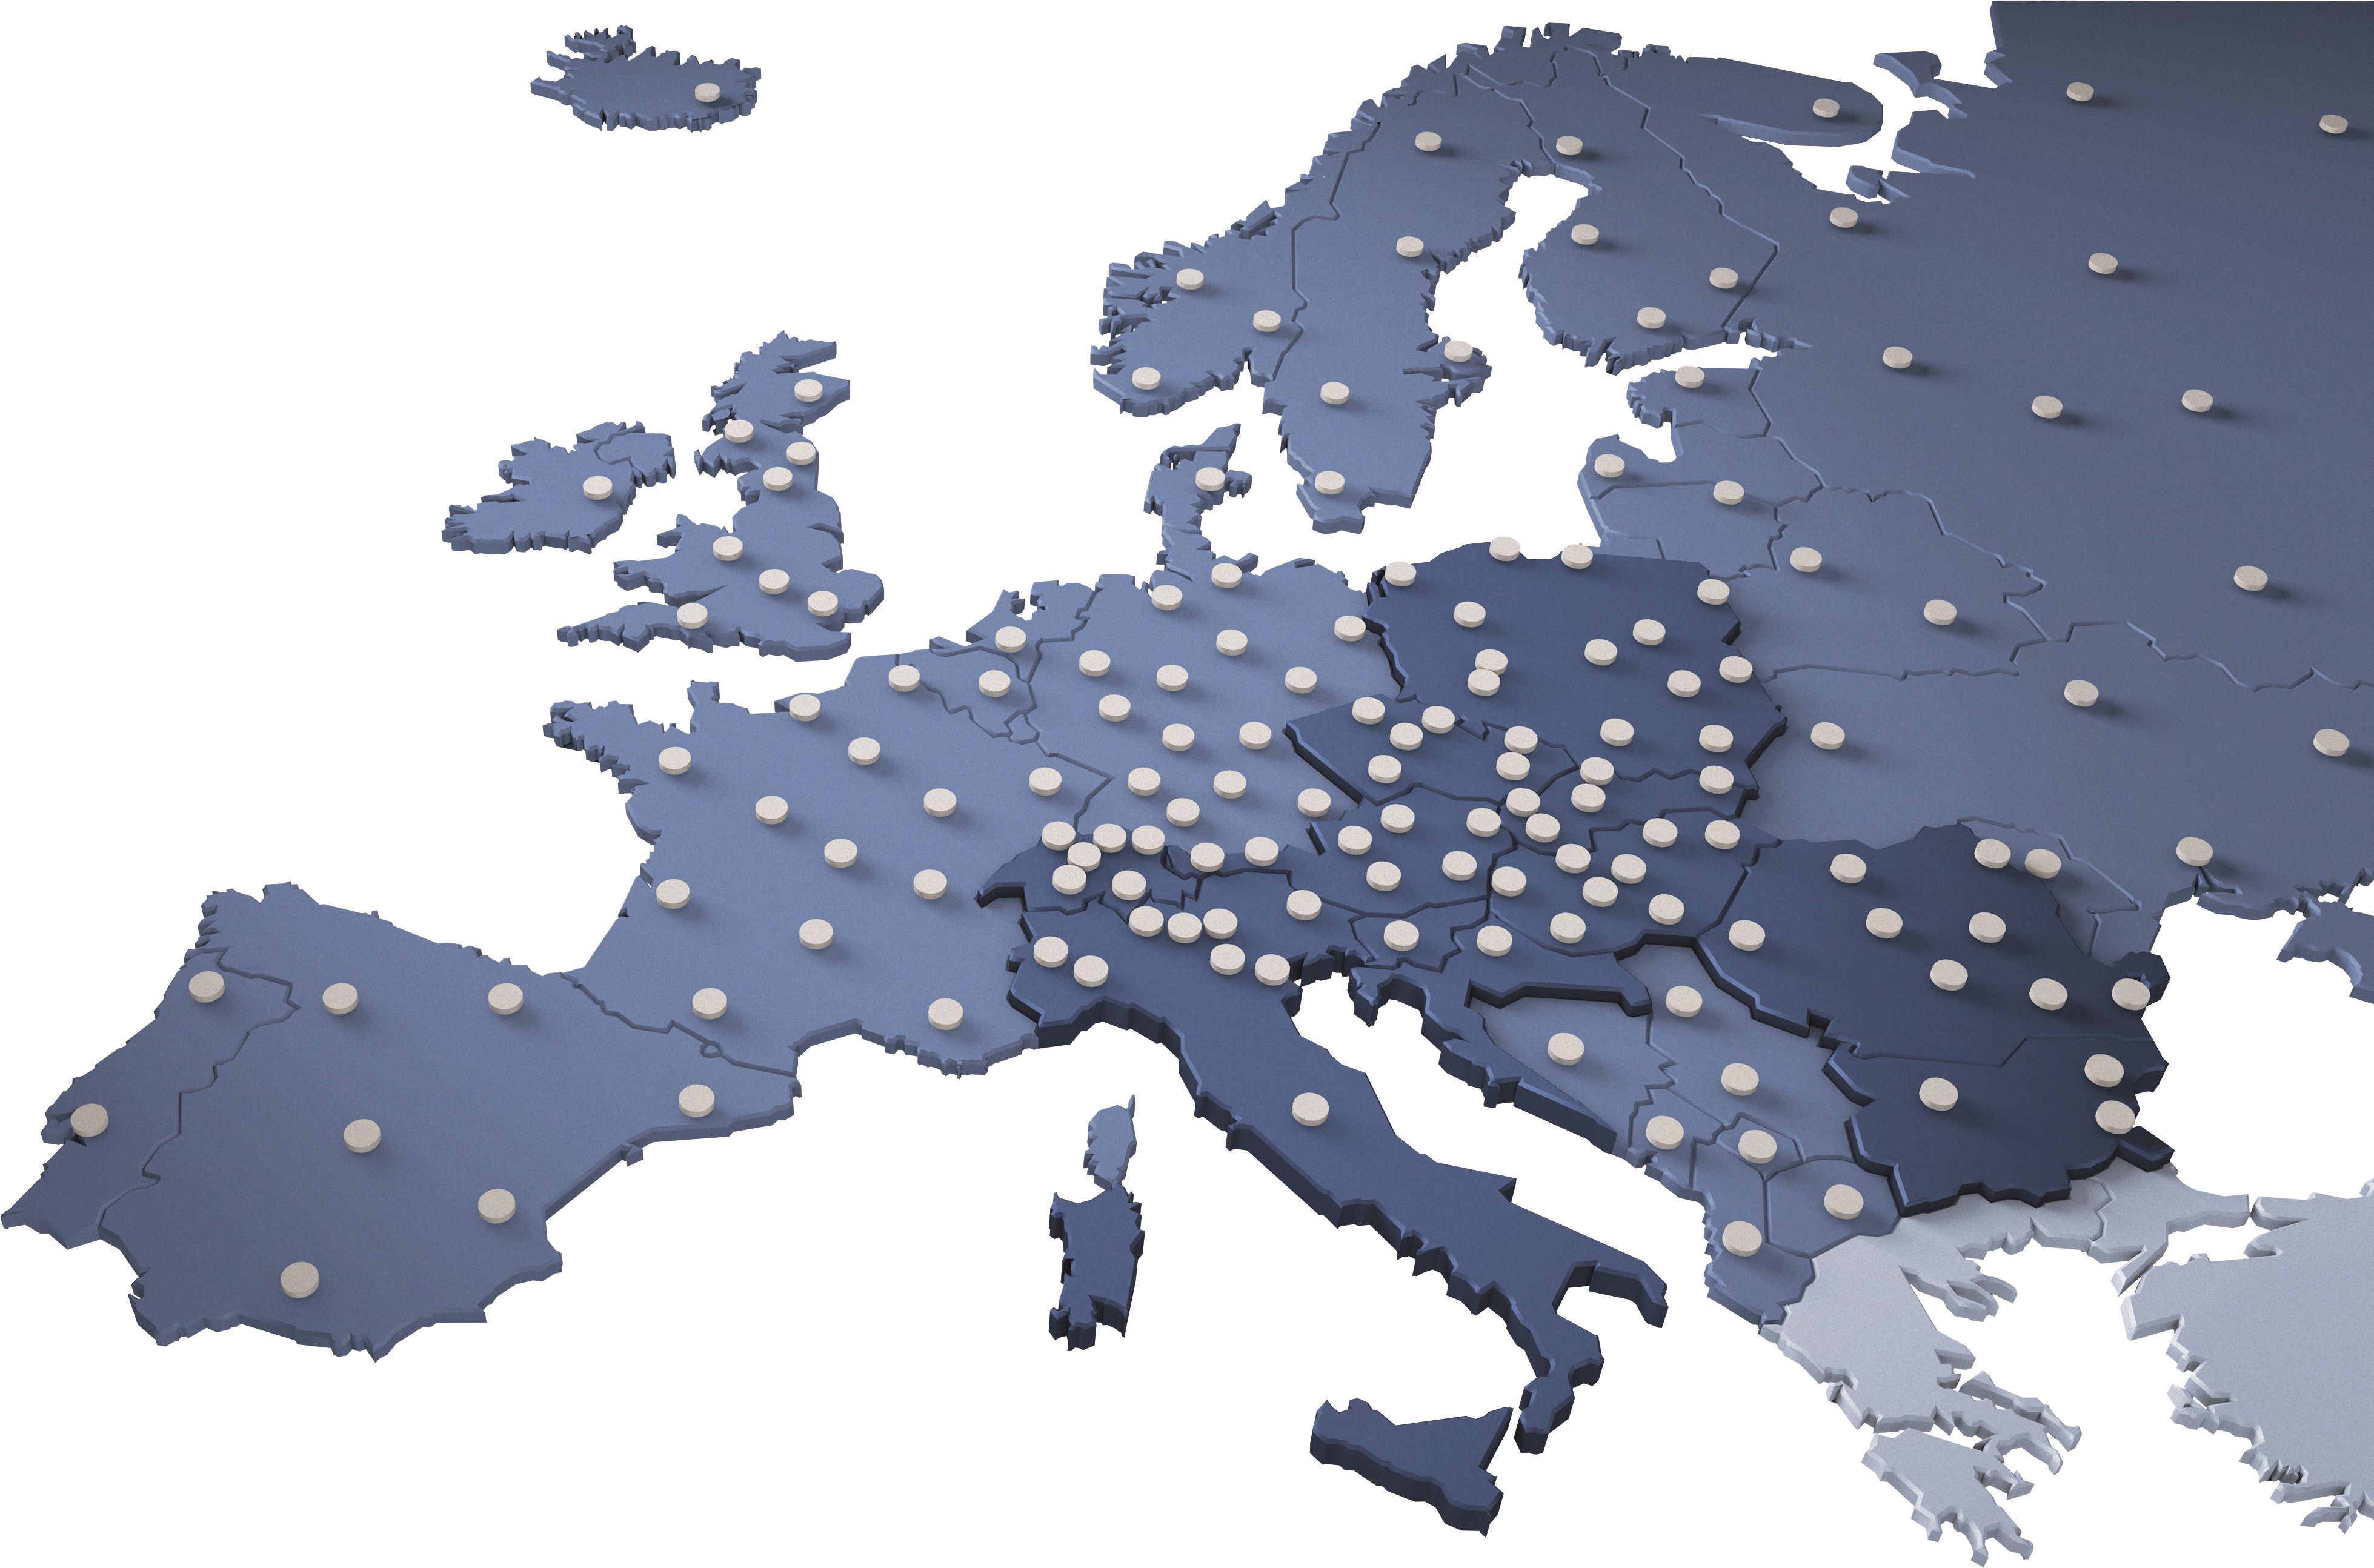 Mreža depojev širom Evrope